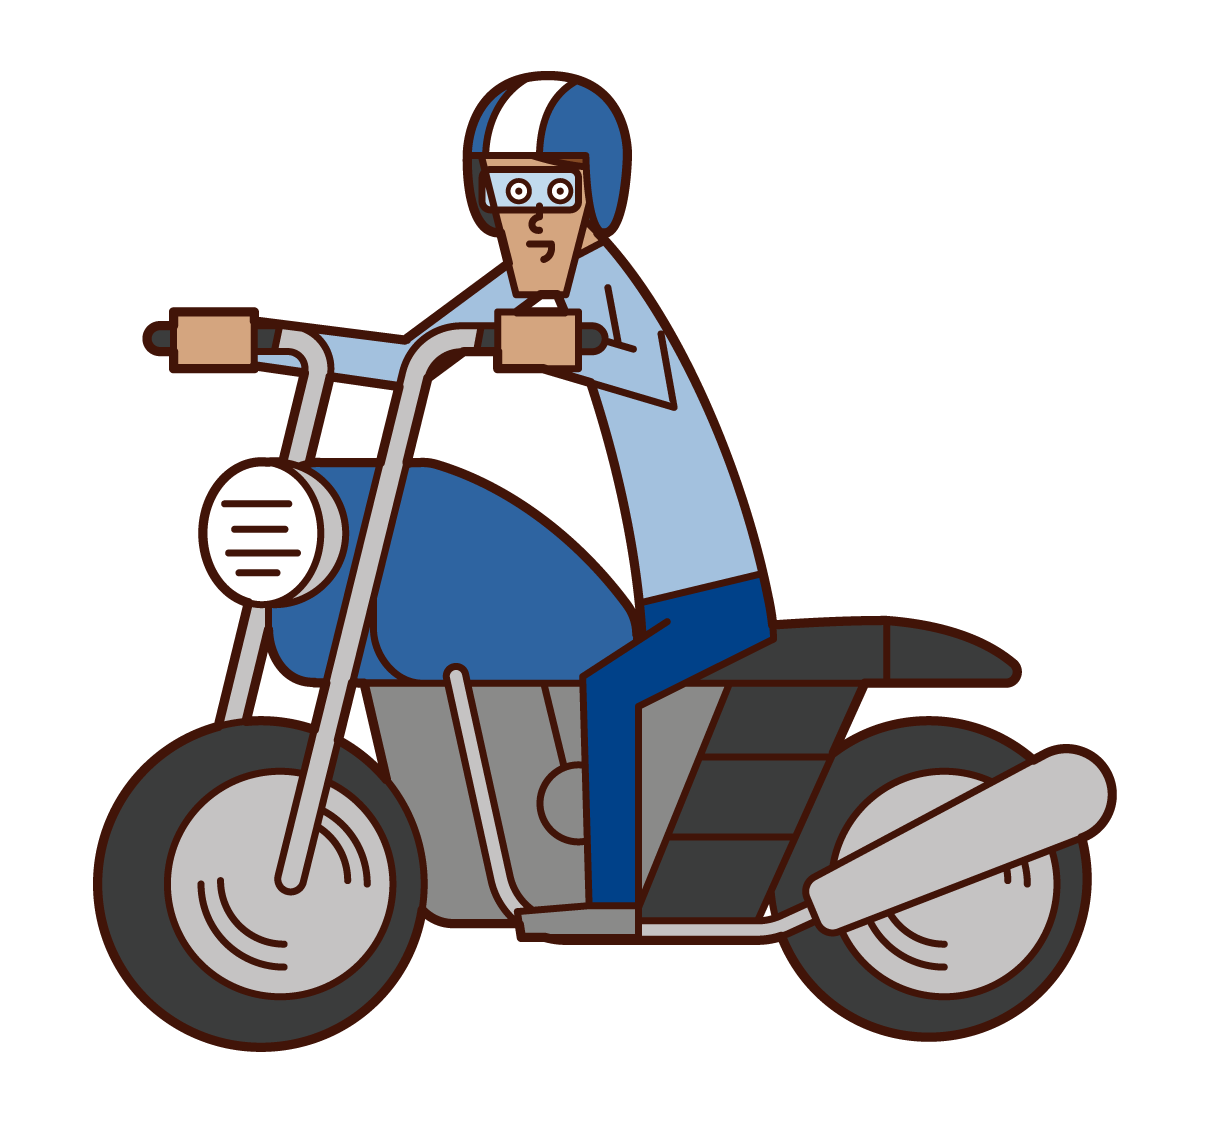 오토바이를 운전하는 사람 (남성)의 그림